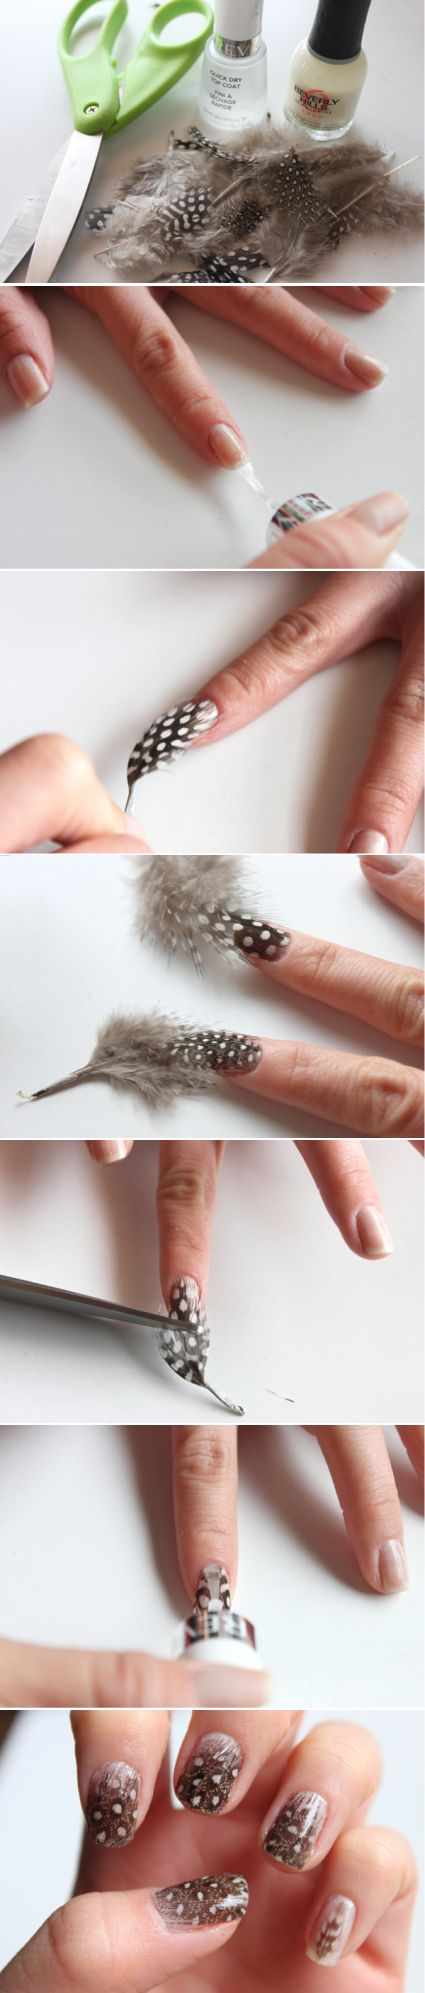 маникюр с рисунком пера на ногтях